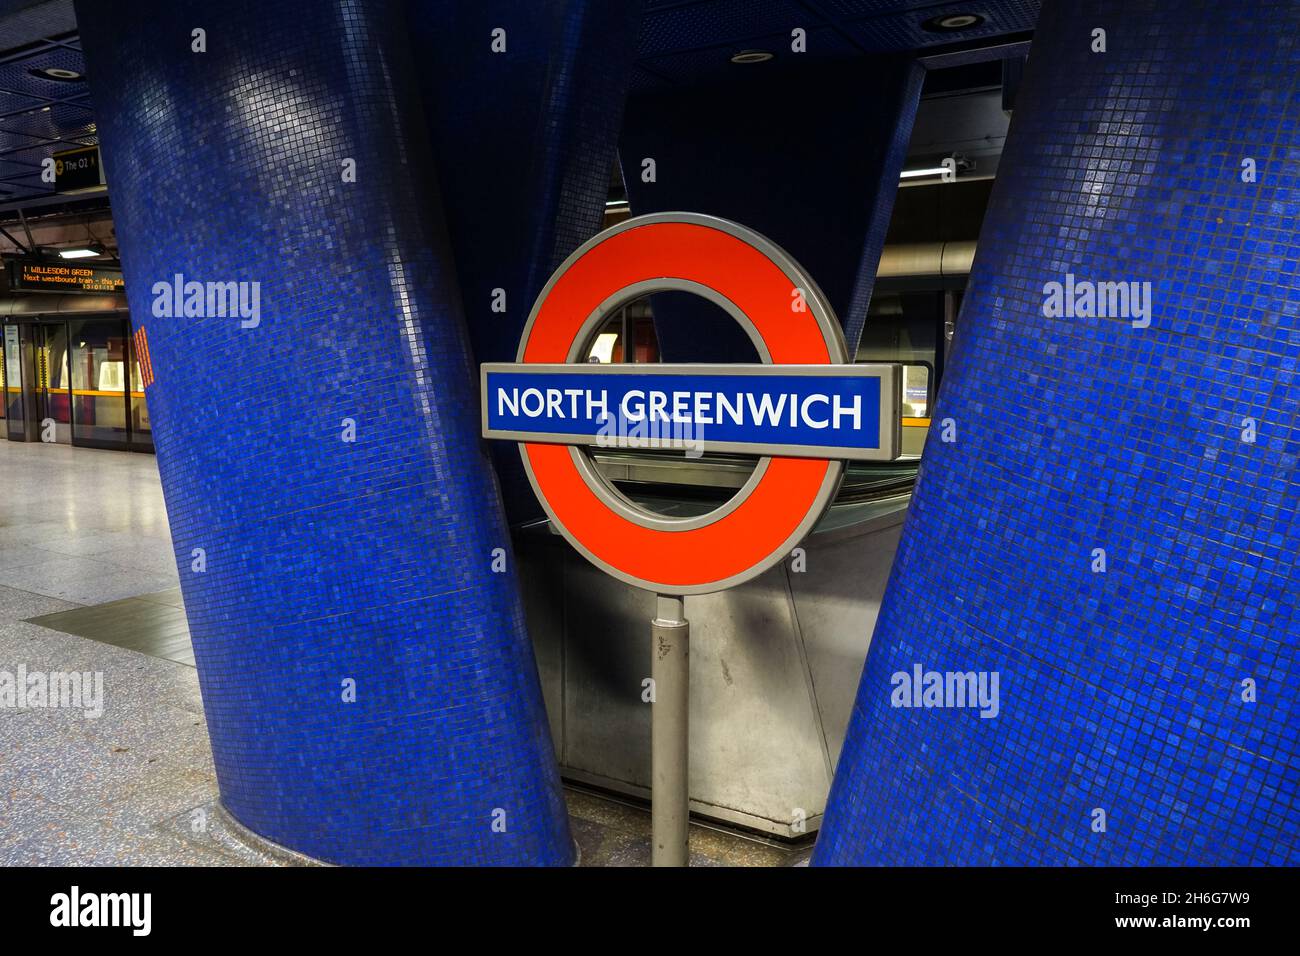 North Greenwich underground, tube station roundel sign London England United Kingdom UK Stock Photo